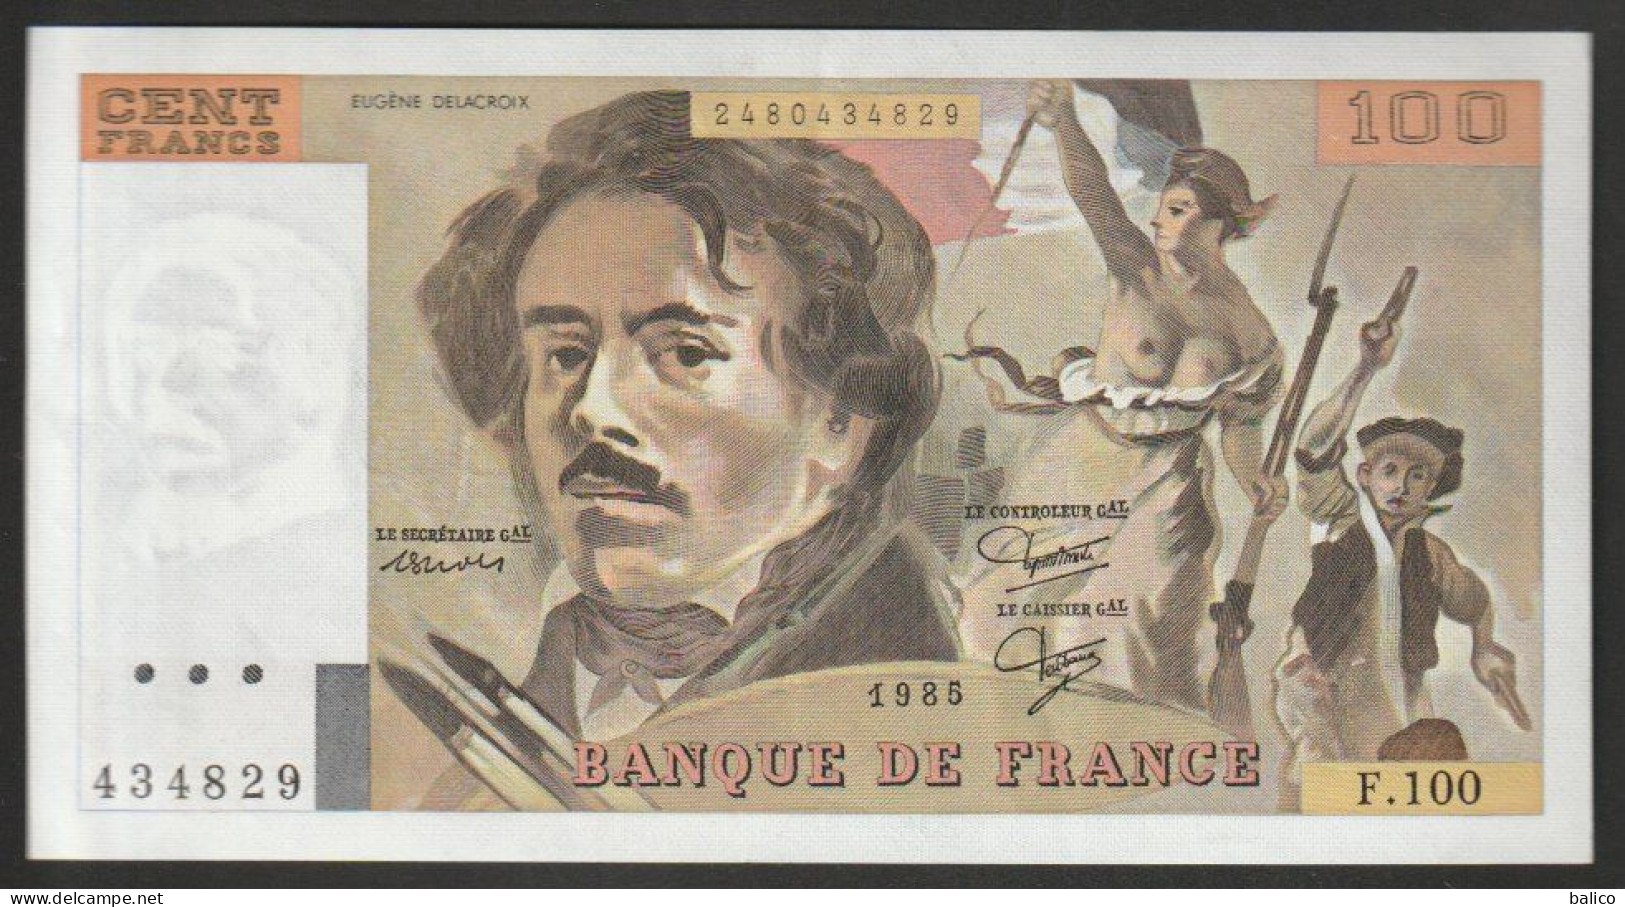 100 Francs - Delacroix 1985 - F.100 - 434829  - NEUF, Pas De TROU Et Pas De Plis - TTB - 100 F 1978-1995 ''Delacroix''